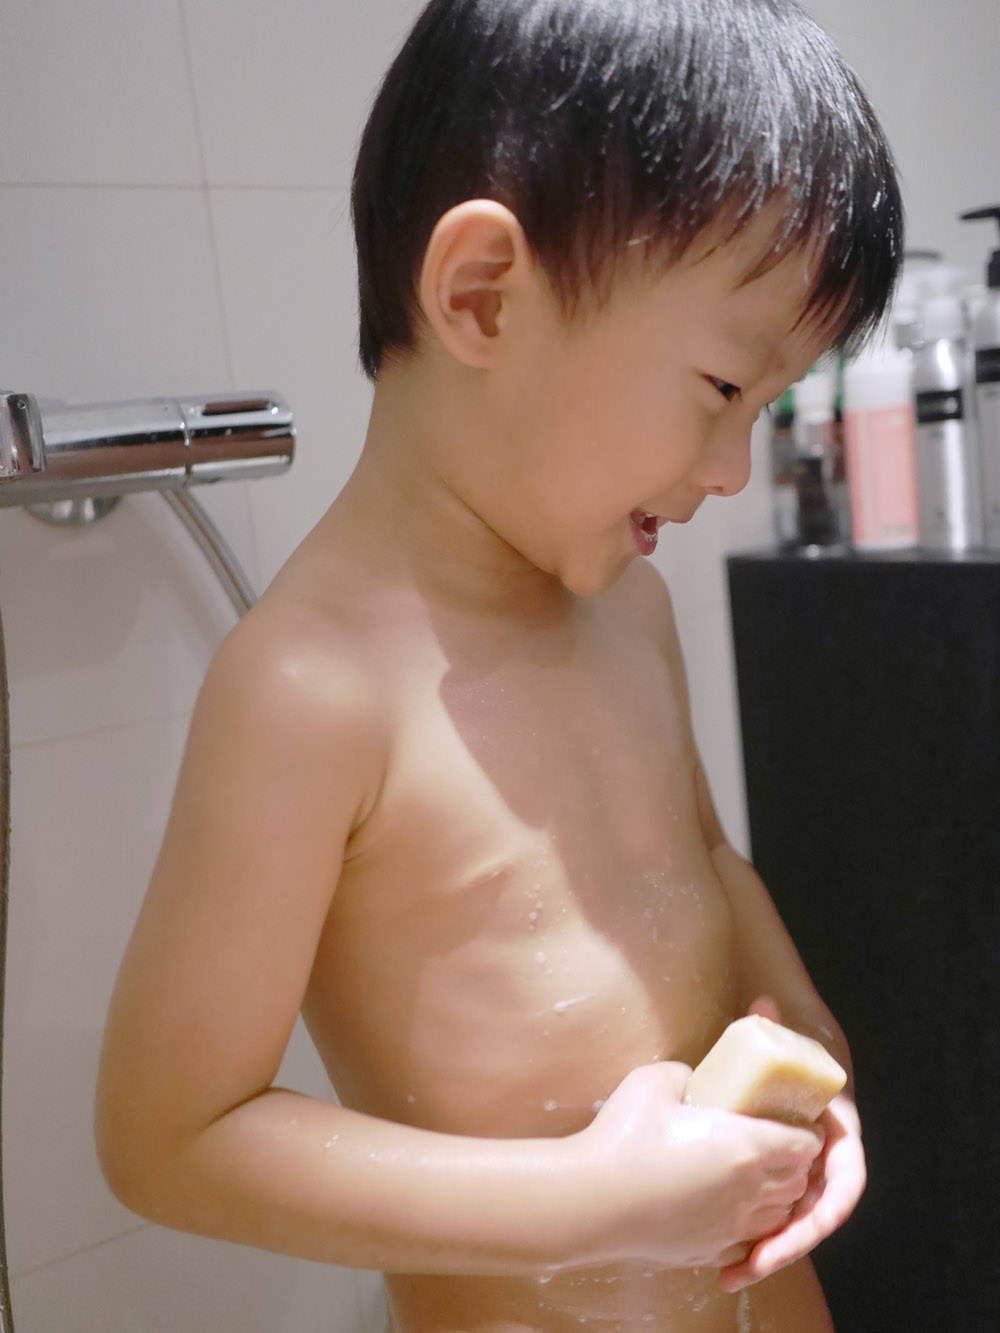 [手工皂] 阿嬤的配方-黑糖羊奶皂 ,專為孕婦寶貝設計全家都能使用的潔膚用品無負擔冷製肥皂